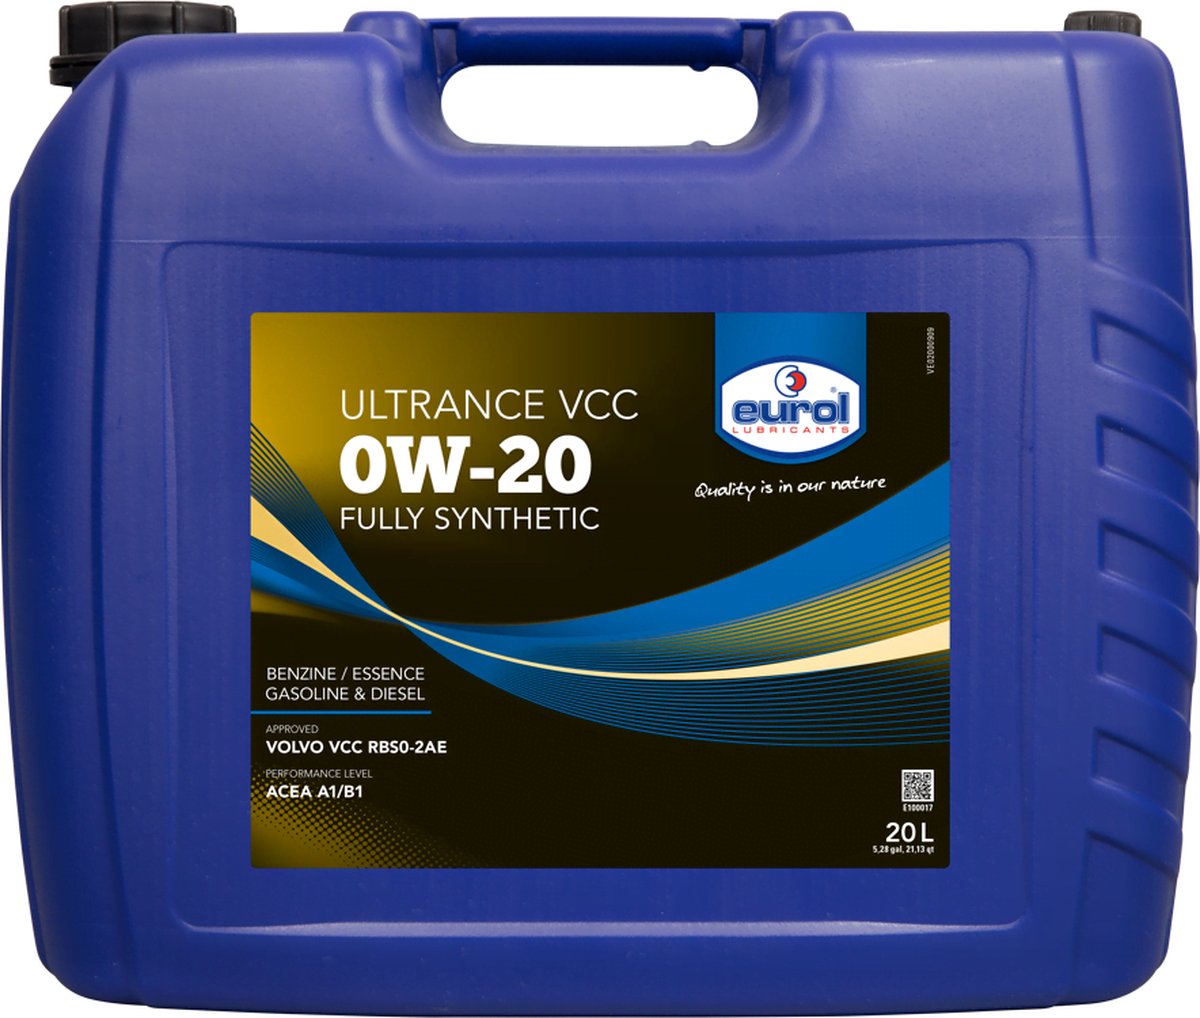 Eurol Ultrance VCC 0W-20 - 20L